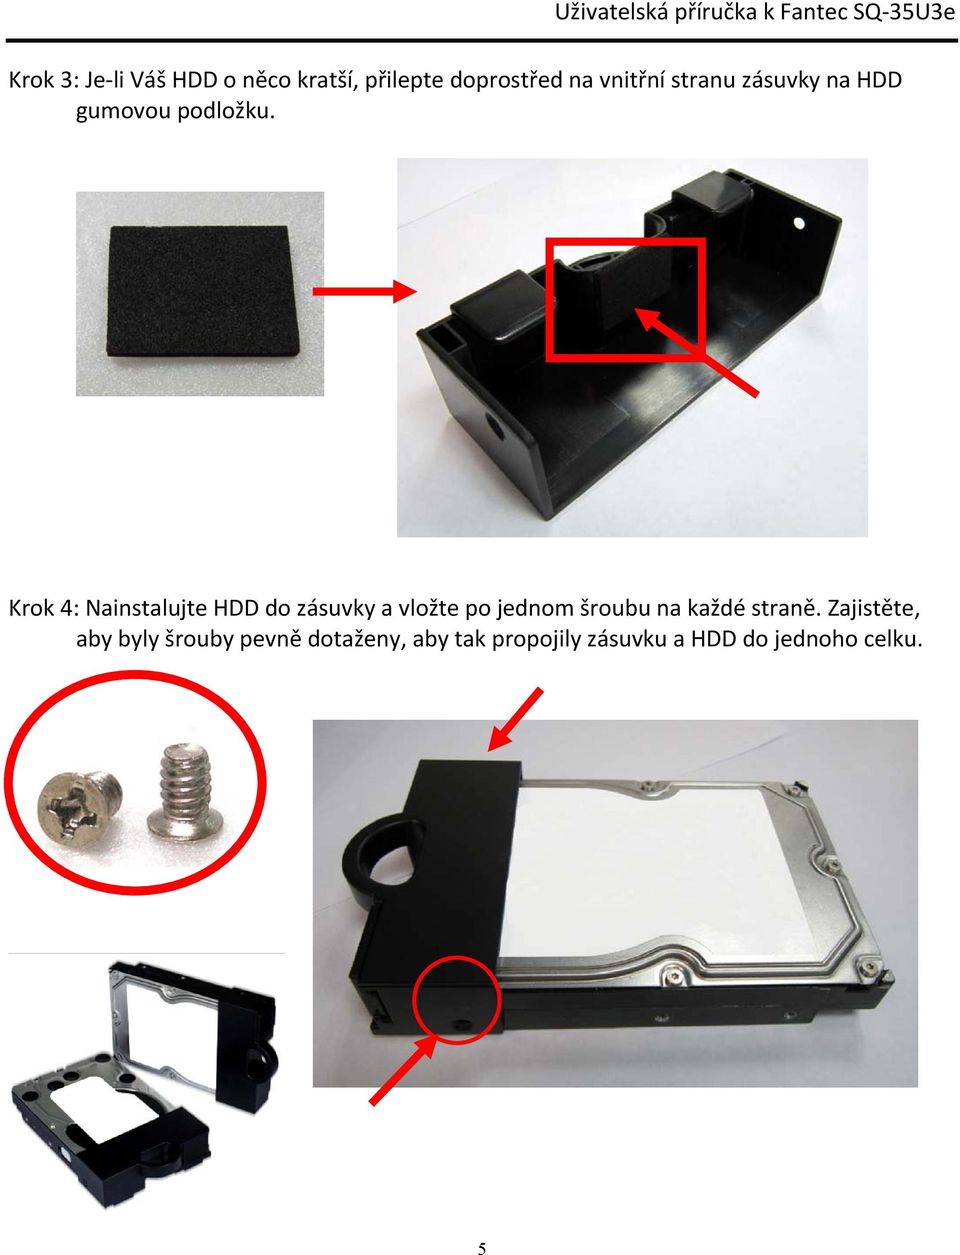 Krok 4: Nainstalujte HDD do zásuvky a vložte po jednom šroubu na každé